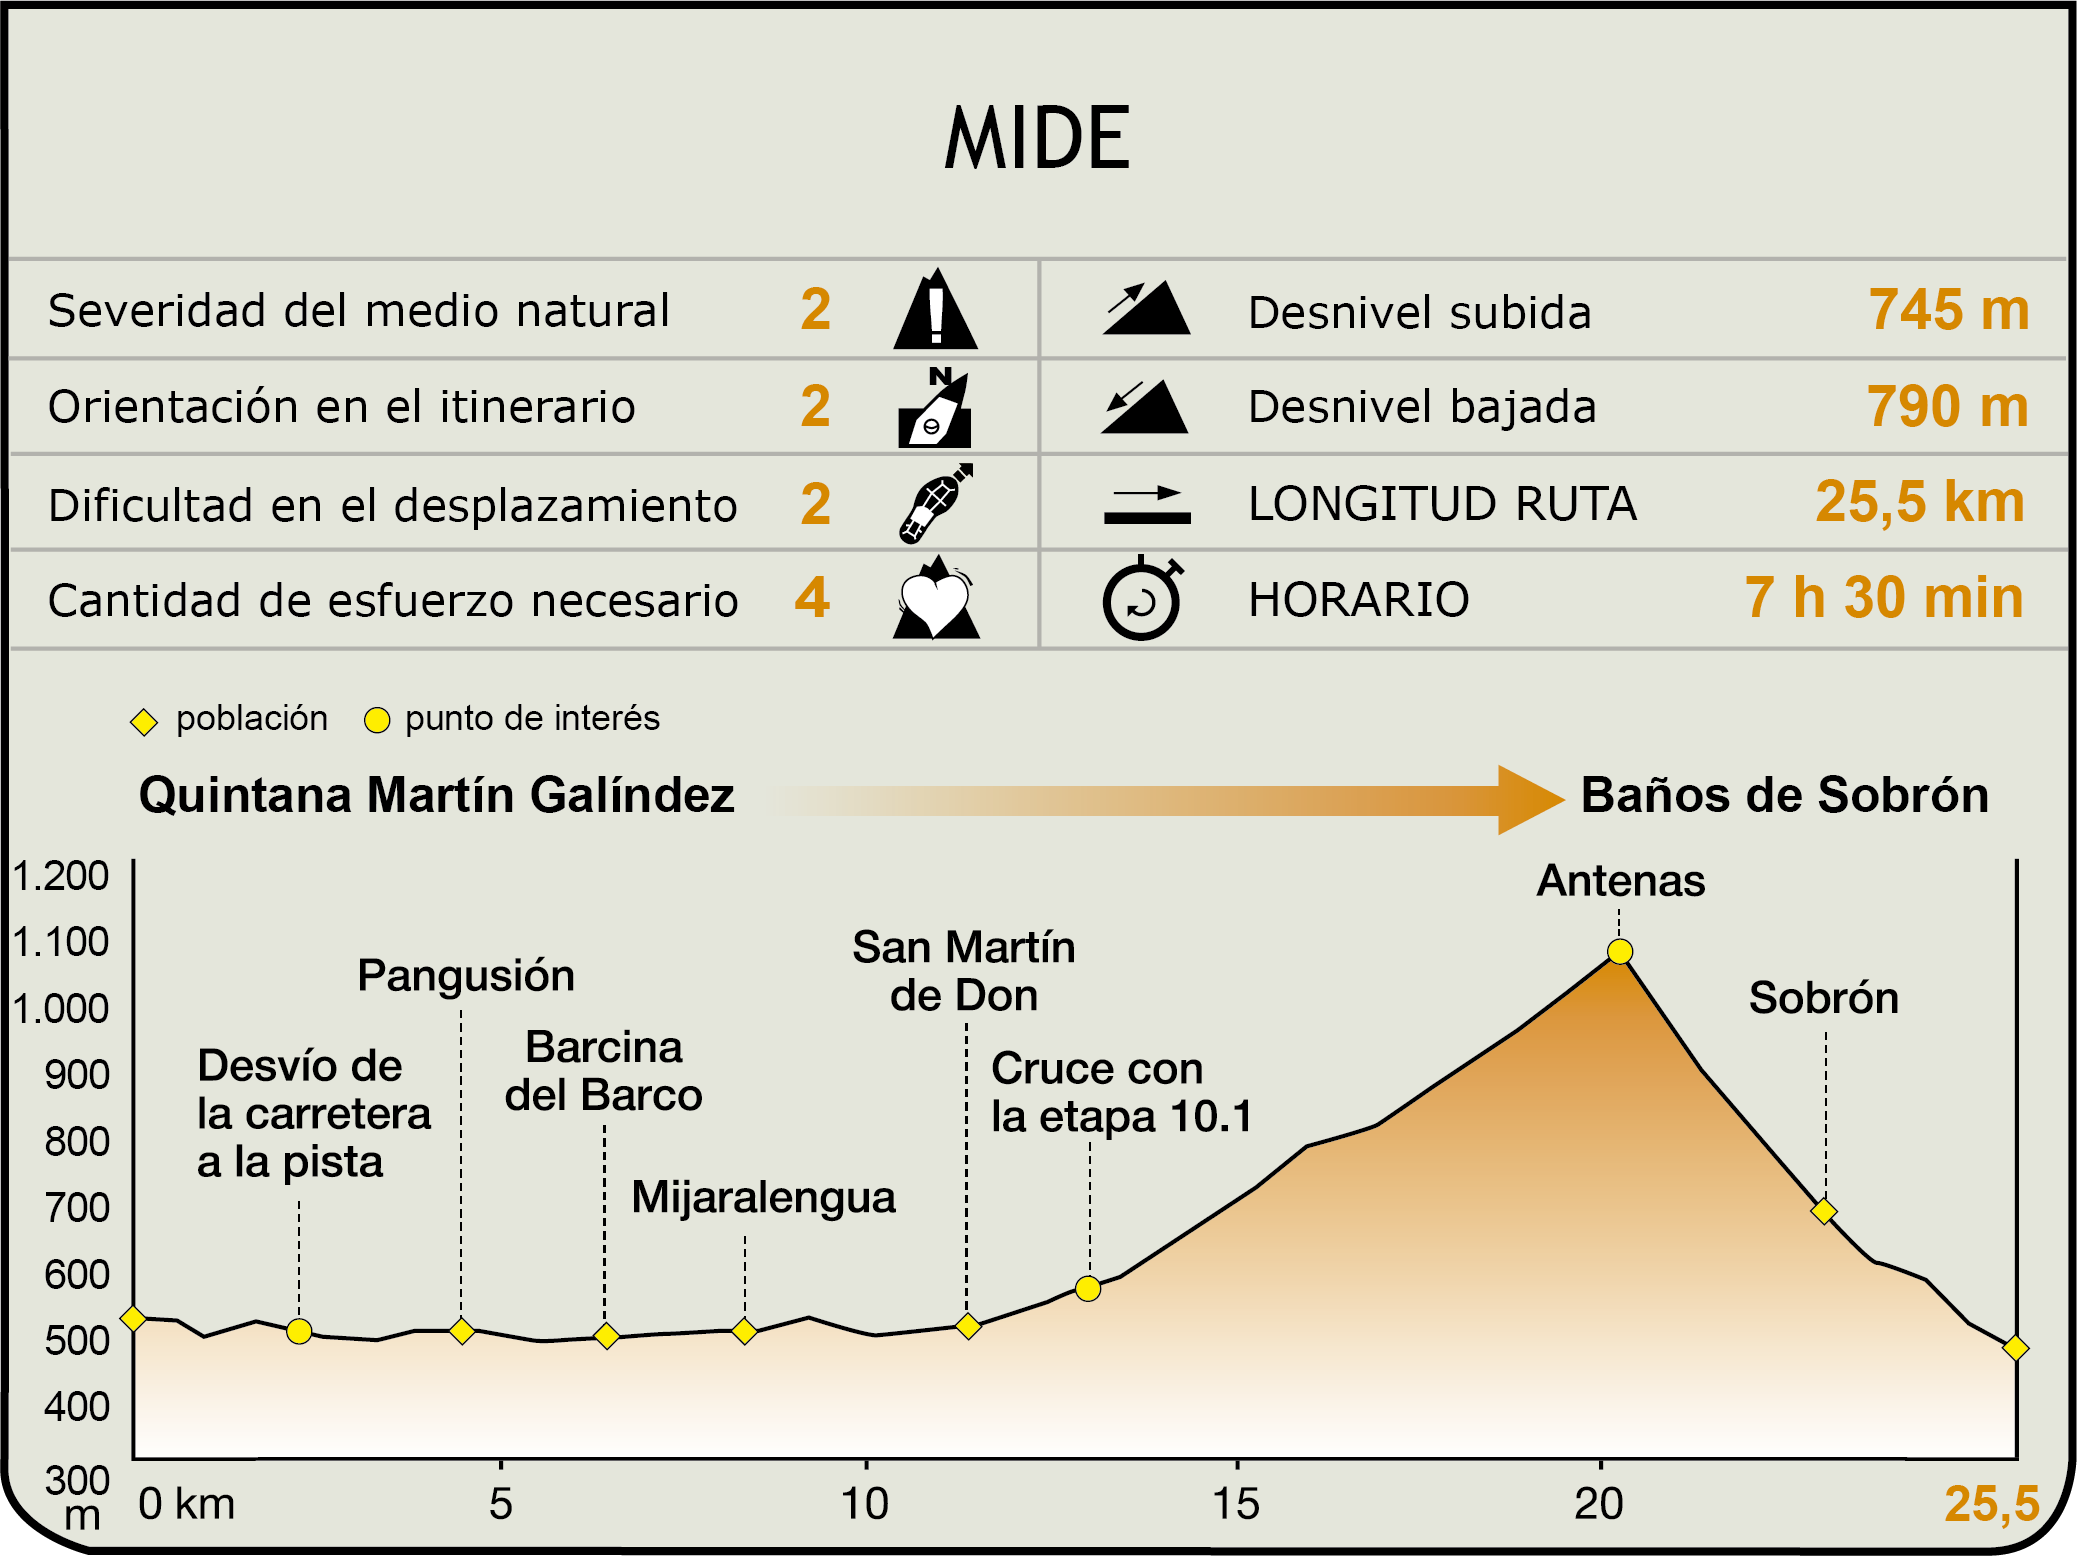 Pefil MIDE de la Etapa Quintana Martín Galíndez-Baños de Sobrón